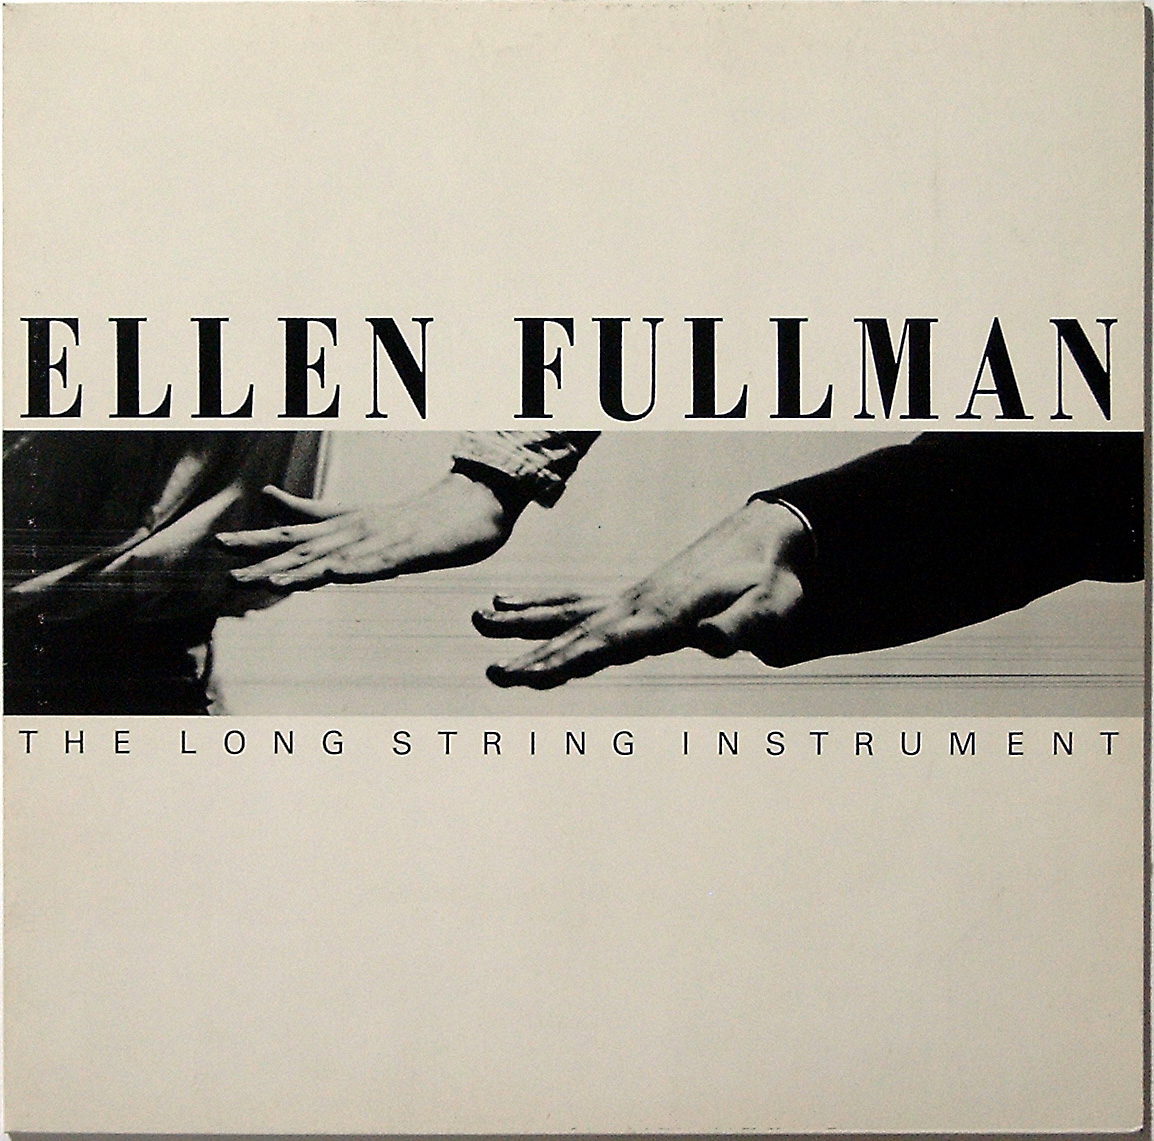 Ellen Fullman